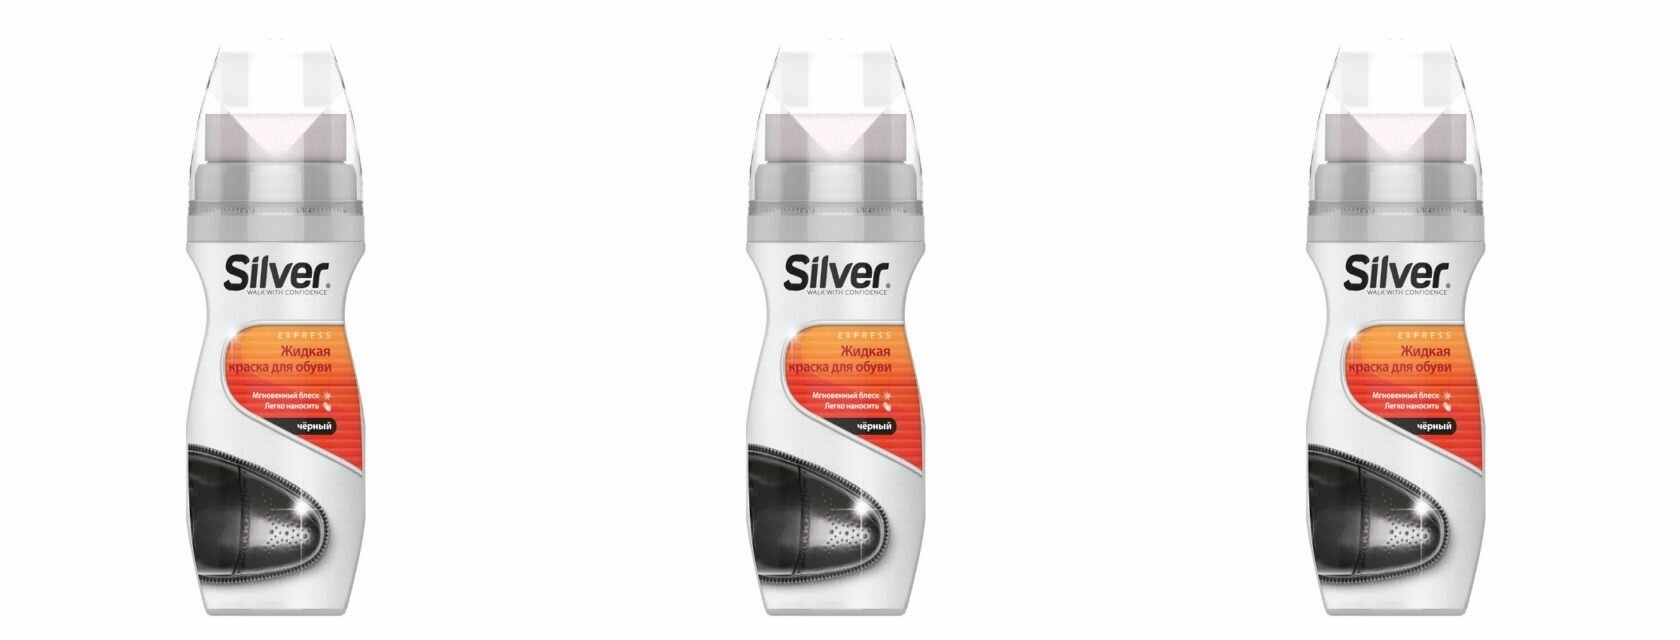 Silver Крем-краска для обуви Черный, жидкая, 75 мл, 3 шт